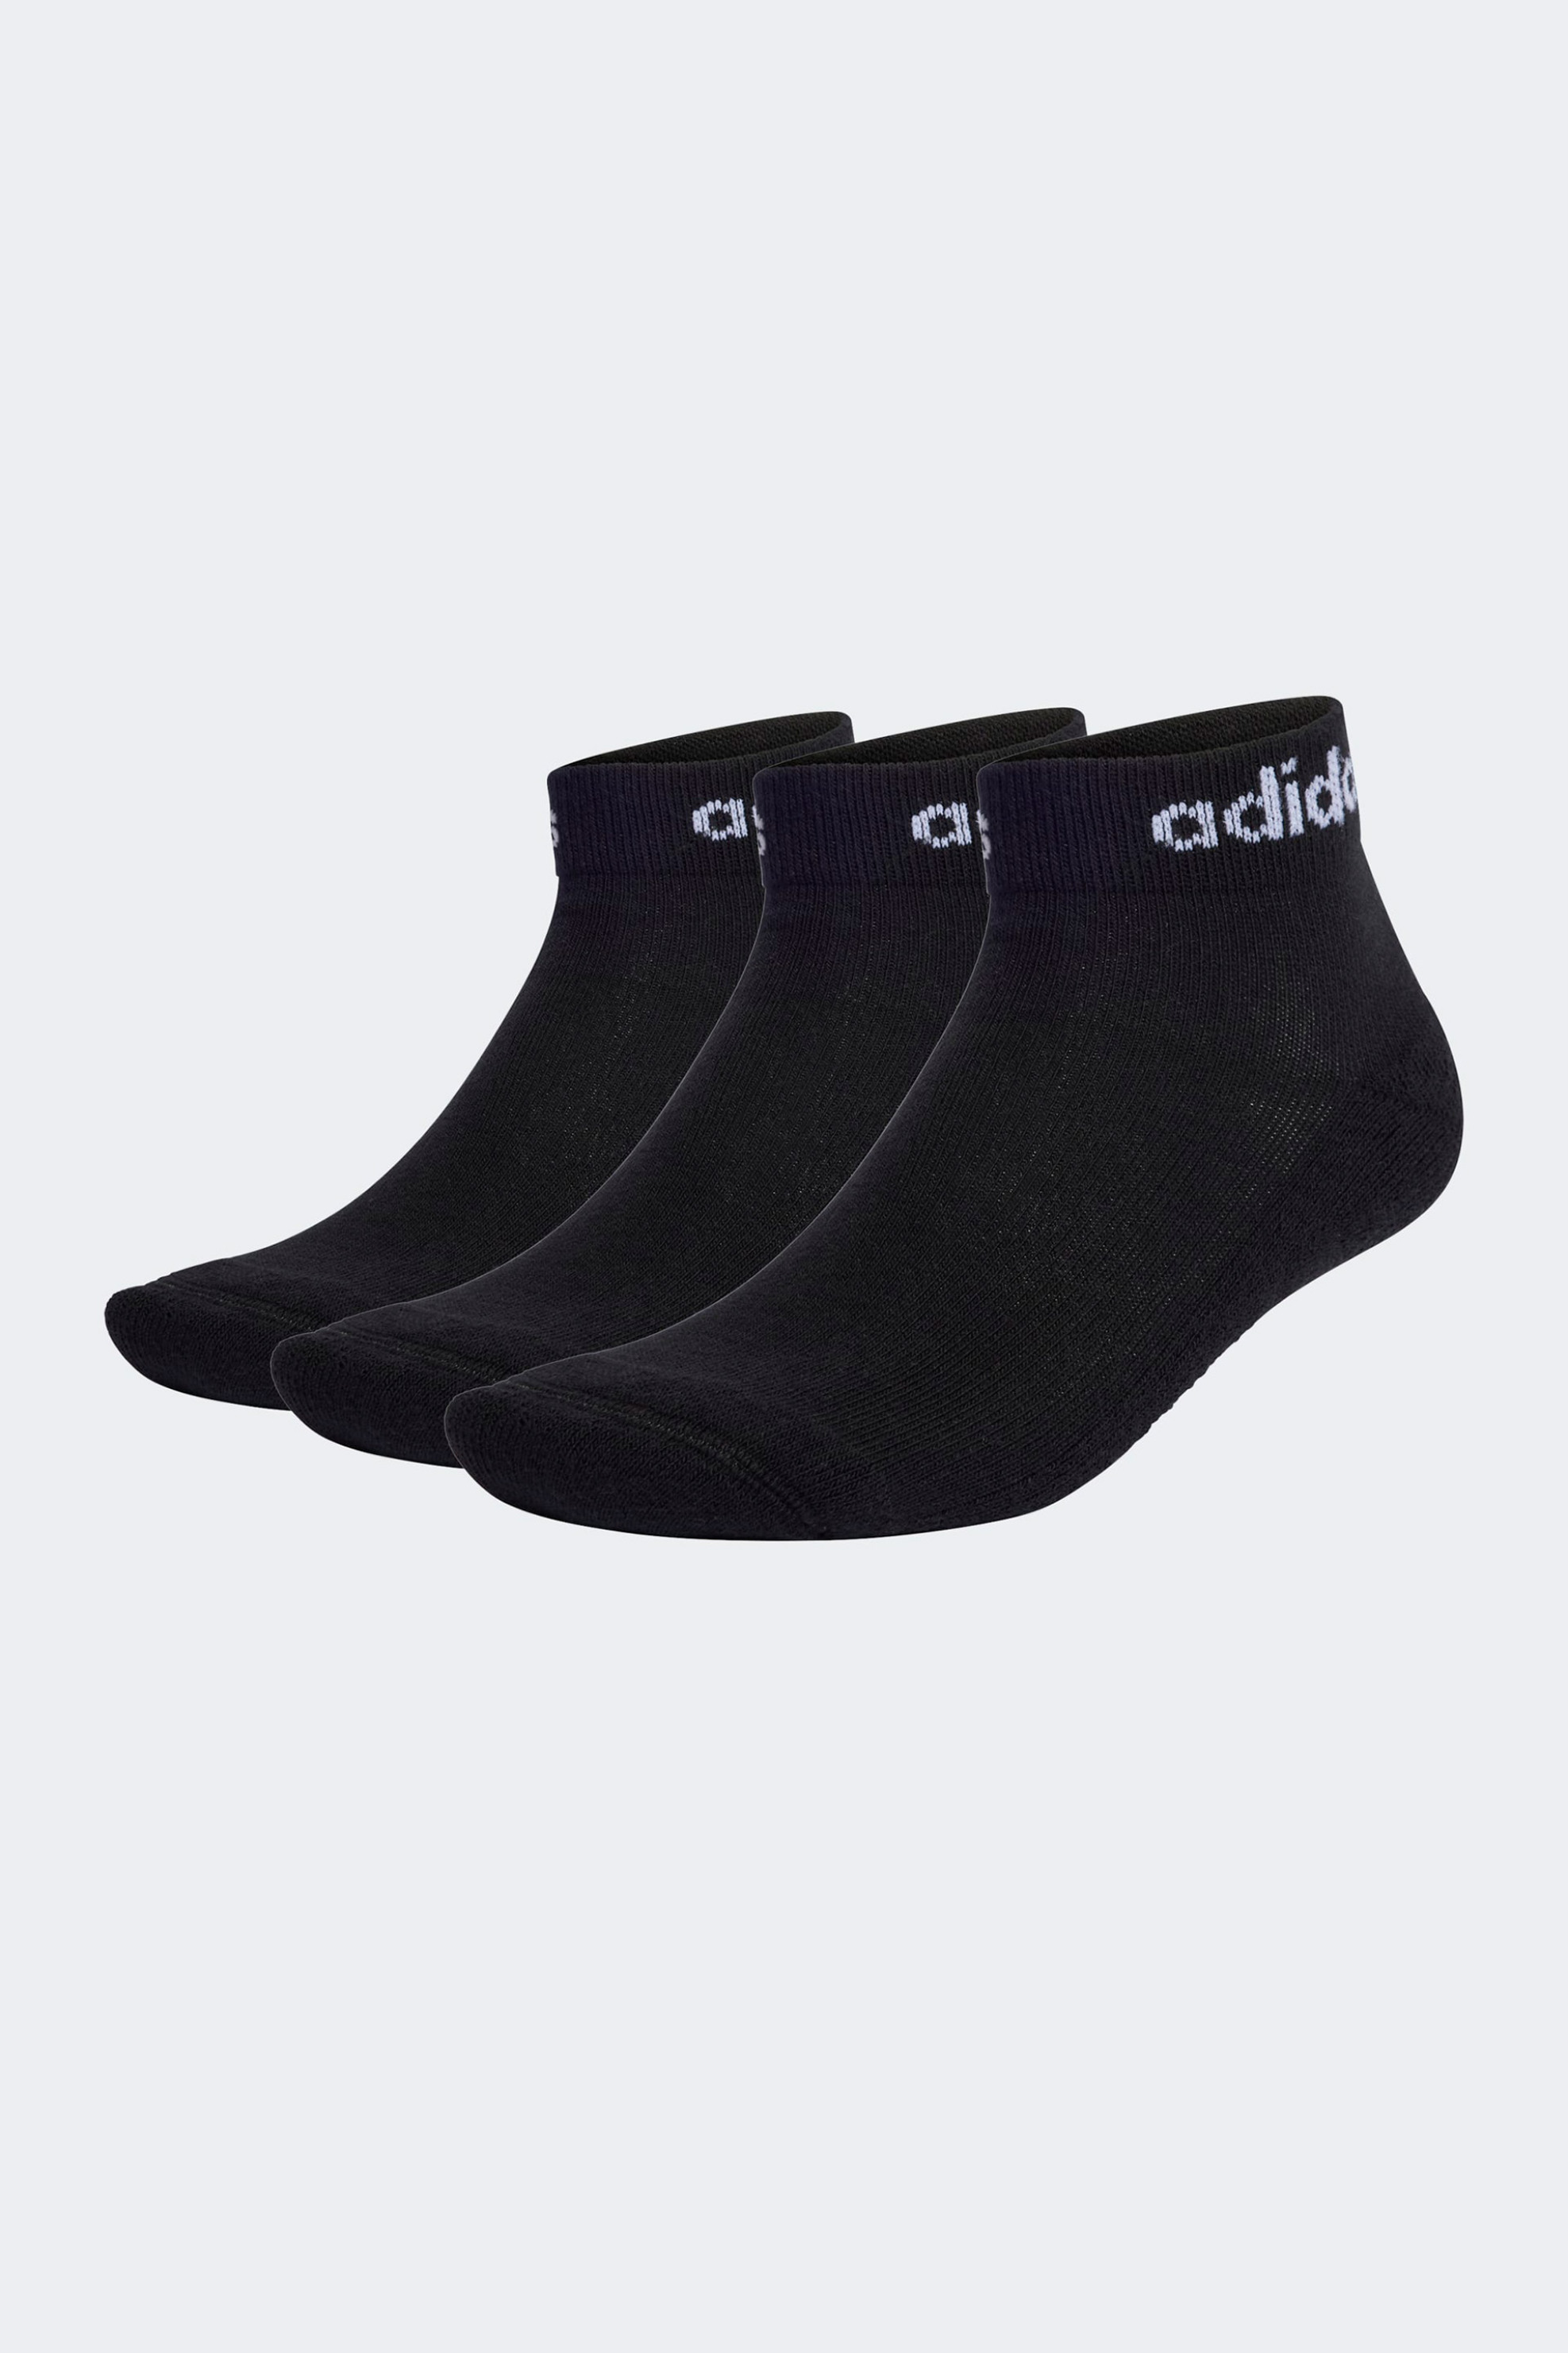 Ανδρική Μόδα > Ανδρικά Ρούχα > Ανδρικές Κάλτσες > Ανδρικές Κάλτσες Κοντές Adidas σετ ανδρικές κάλτσες μονόχρωμες με log print στο πάνω μέρος "Think Linear" (3 τεμάχια) - IC1305 Μαύρο